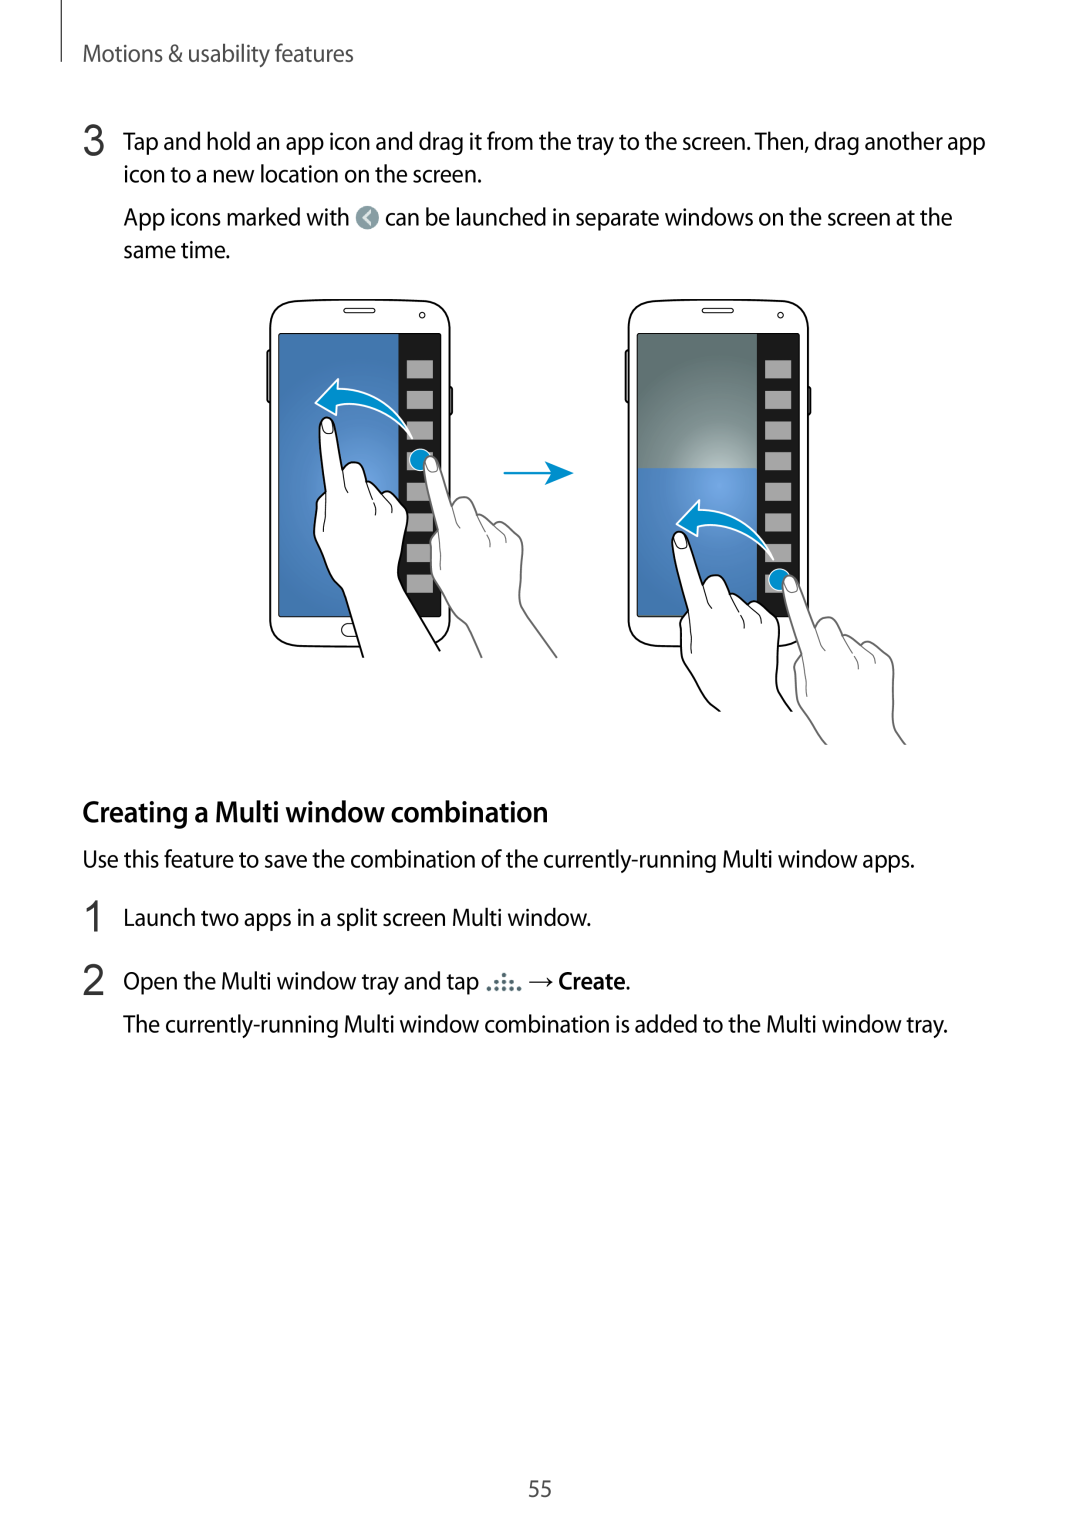 Samsung SM-G901FZWACOS, SM-G901FZKACOS, SM-G901FZDABAL Creating a Multi window combination, Motions & usability features 